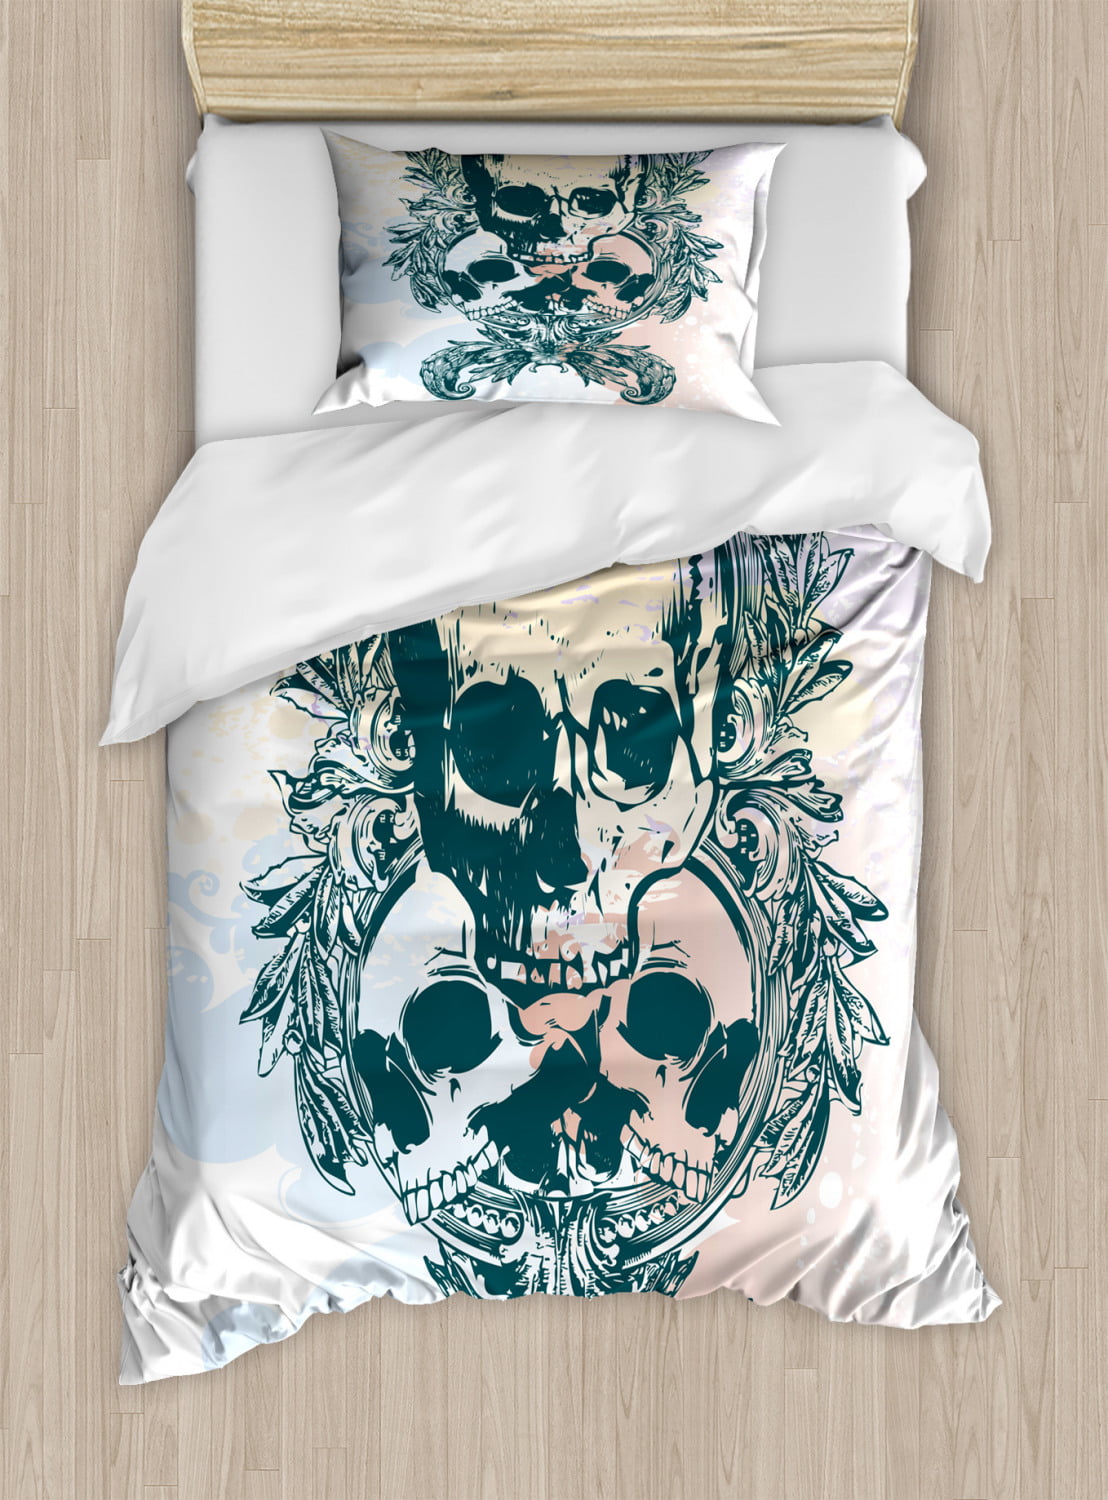 Rapport Sacred Heart Skull Gothic Photographic Print Duvet Cover Bedding Set 